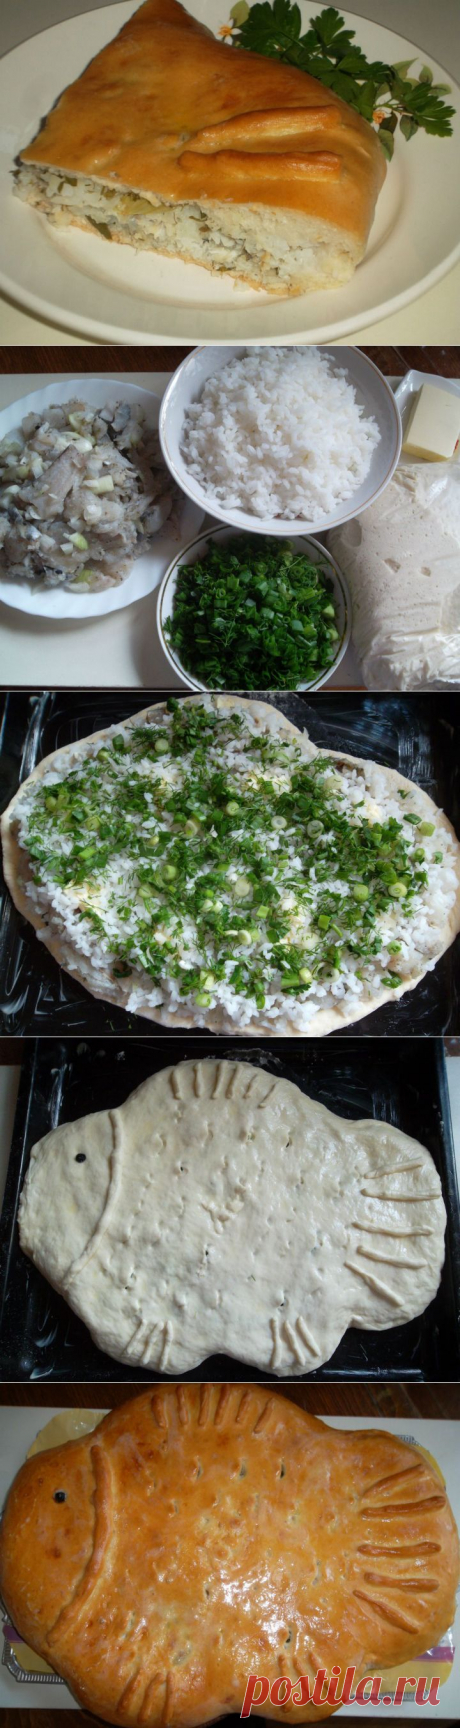 (537) Рыбный пирог - пошаговый рецепт с фото - рыбный пирог - как готовить: ингредиенты, состав, время приготовления - Леди@Mail.Ru